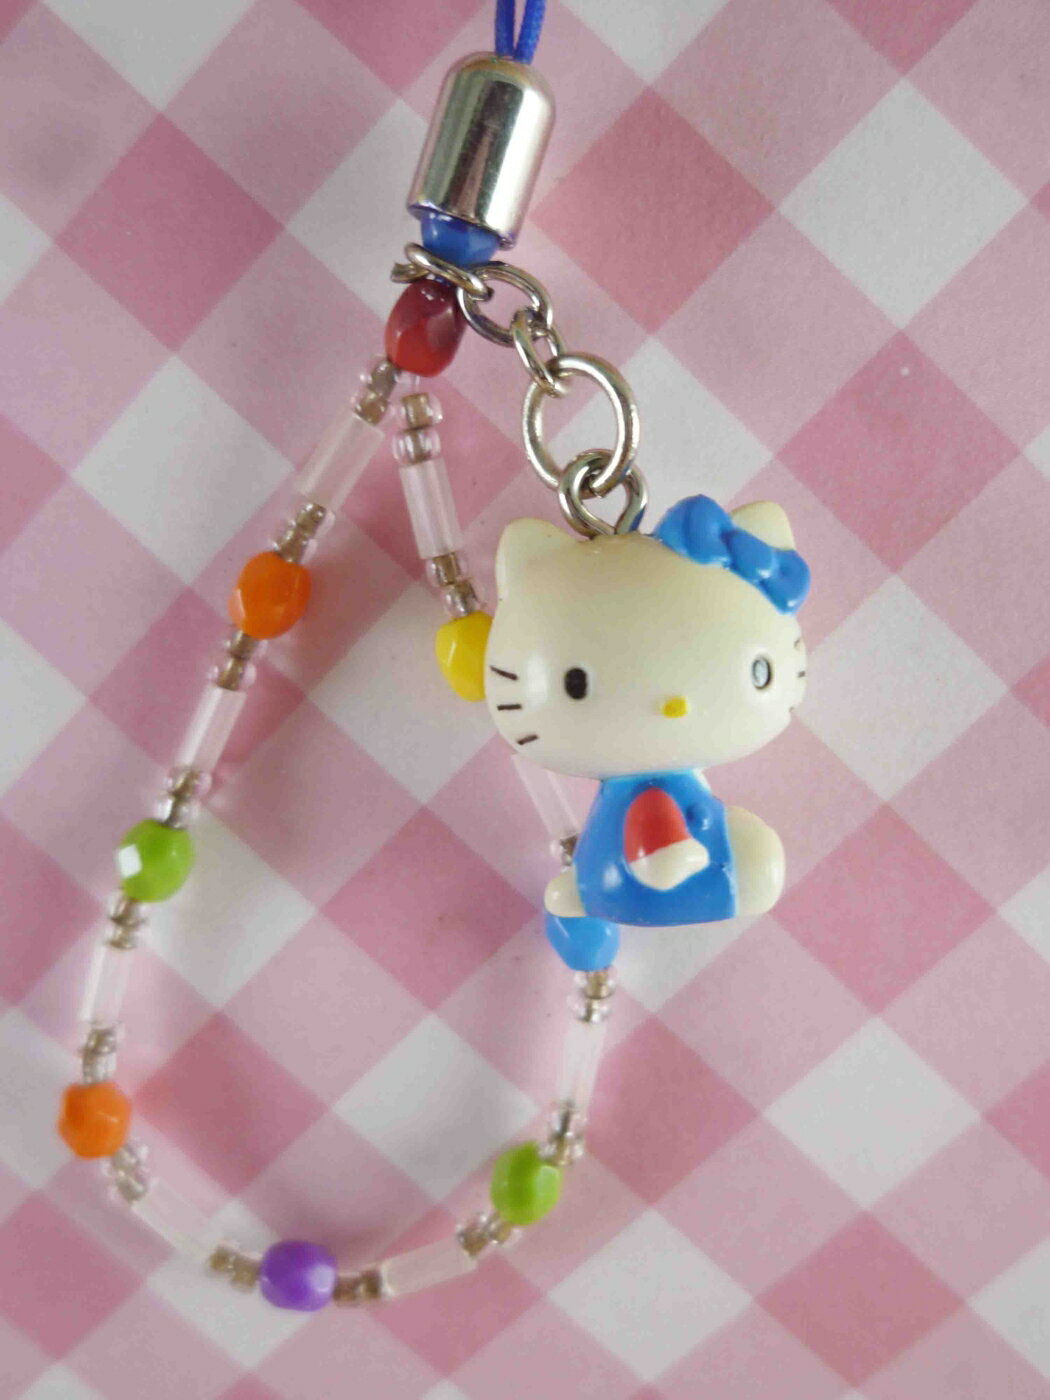 【震撼精品百貨】Hello Kitty 凱蒂貓 KITTY手機提帶-復古藍 震撼日式精品百貨